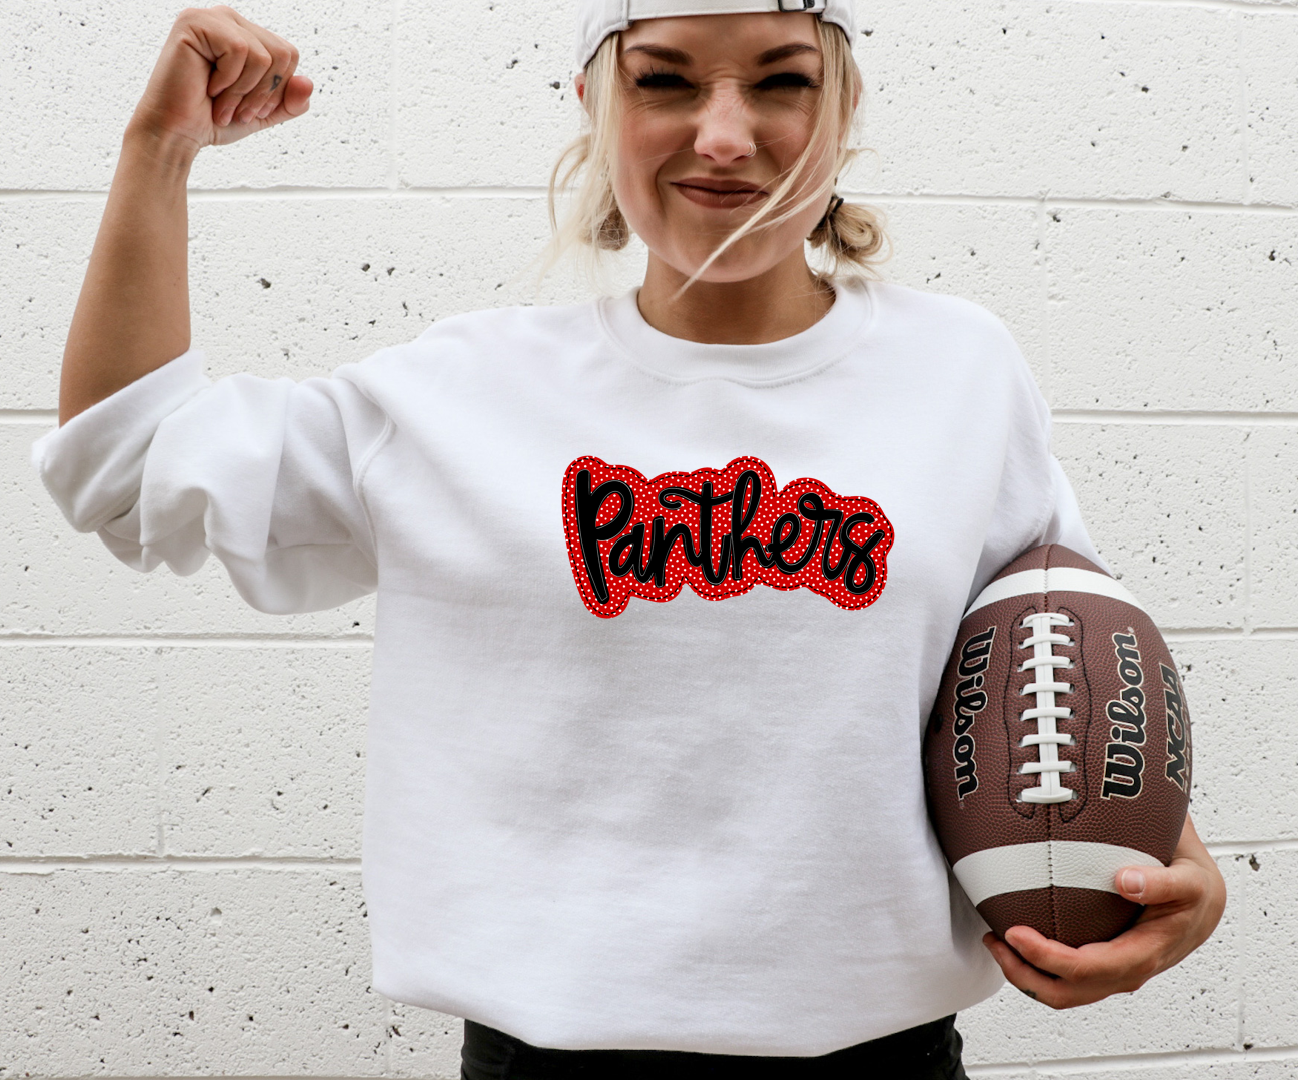 Panthers Polka Dot - Fleece Crew Sweatshirt